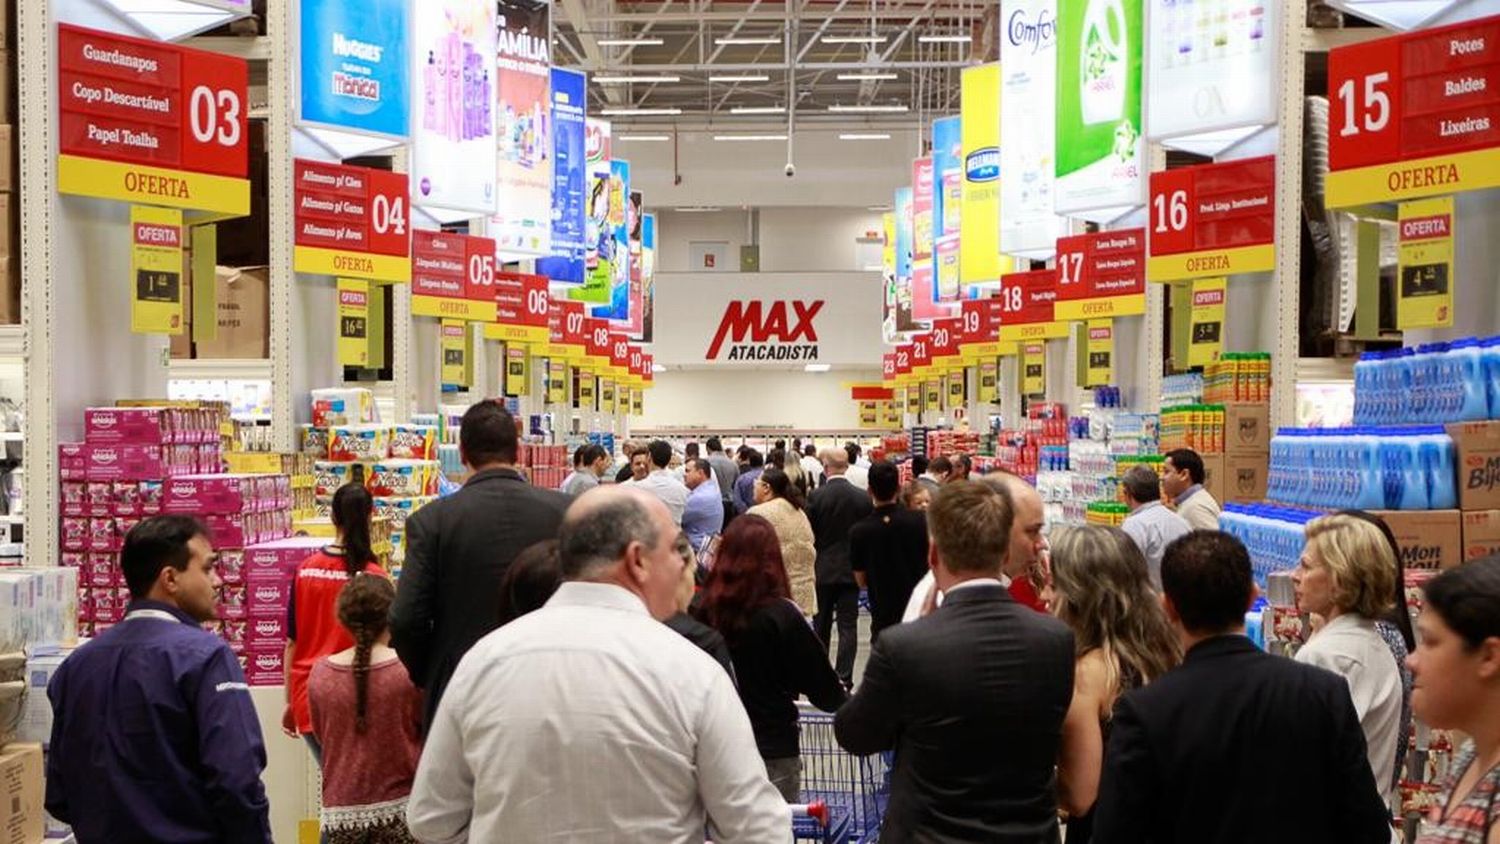 Redes de supermercados começam fevereiro com promoções. Foto: Daniella Carvalho/Gazeta do Povo/Arquivo